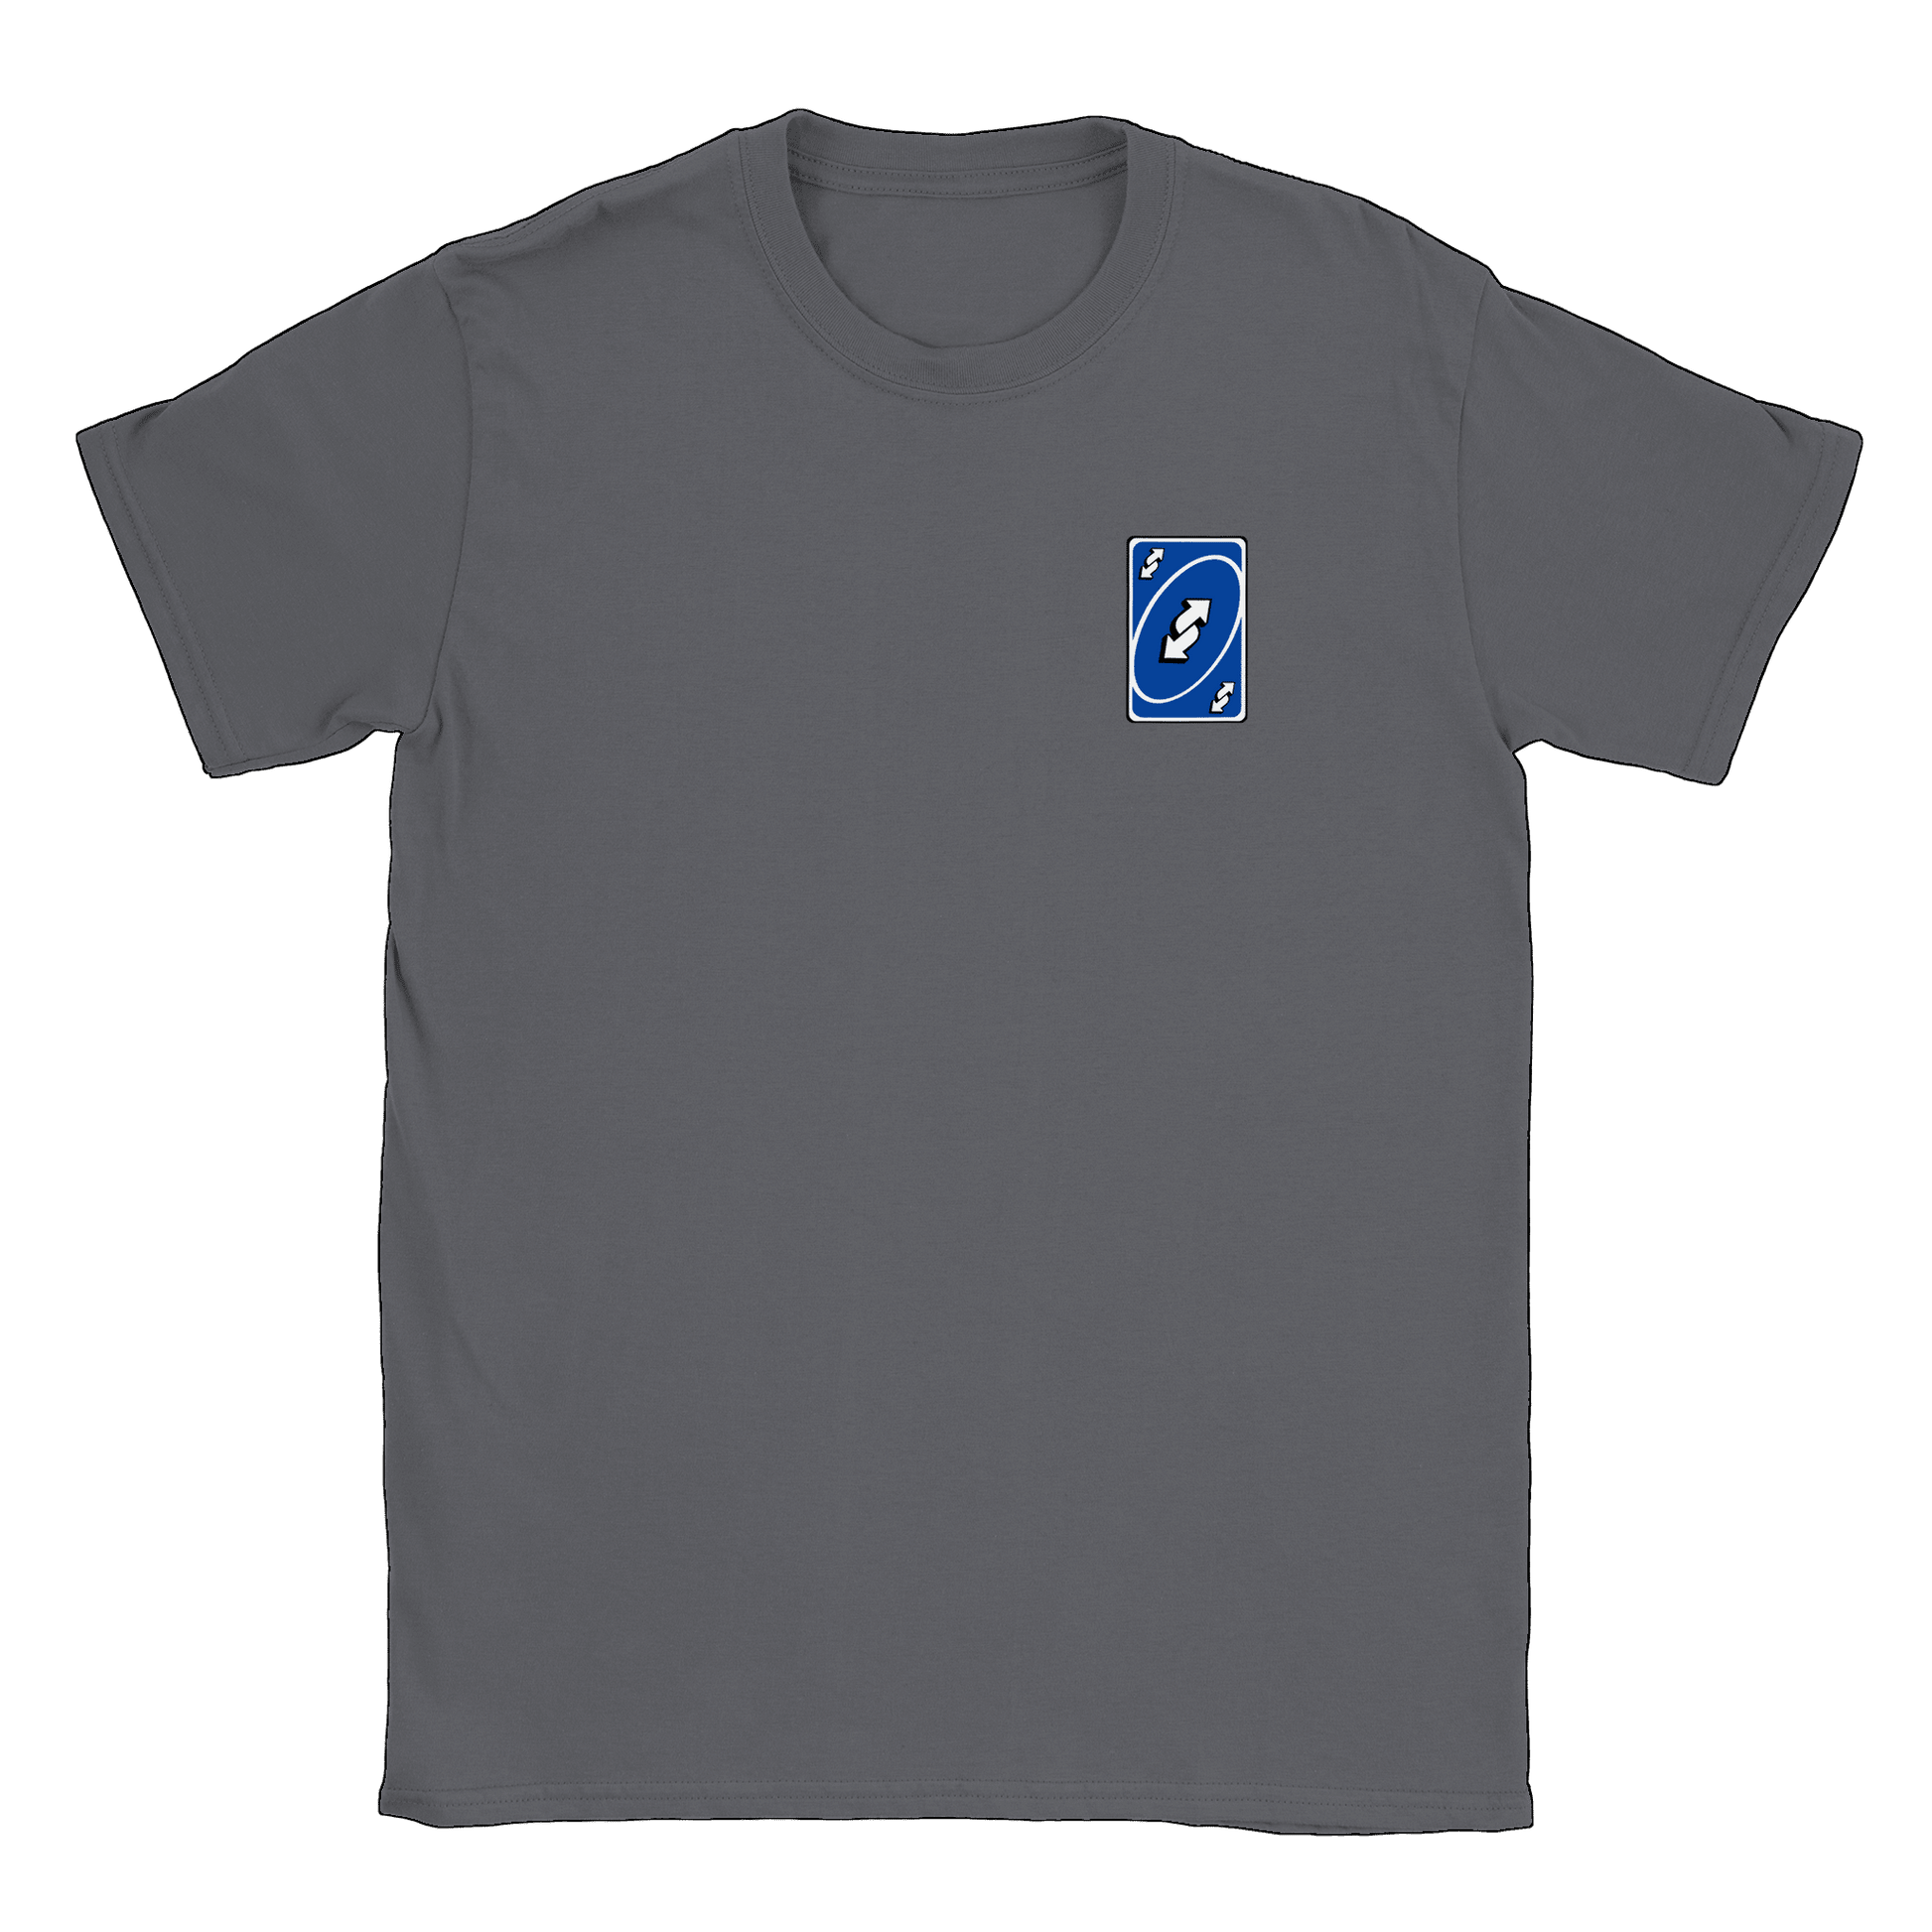 Vändkort litet - T-shirt Charcoal